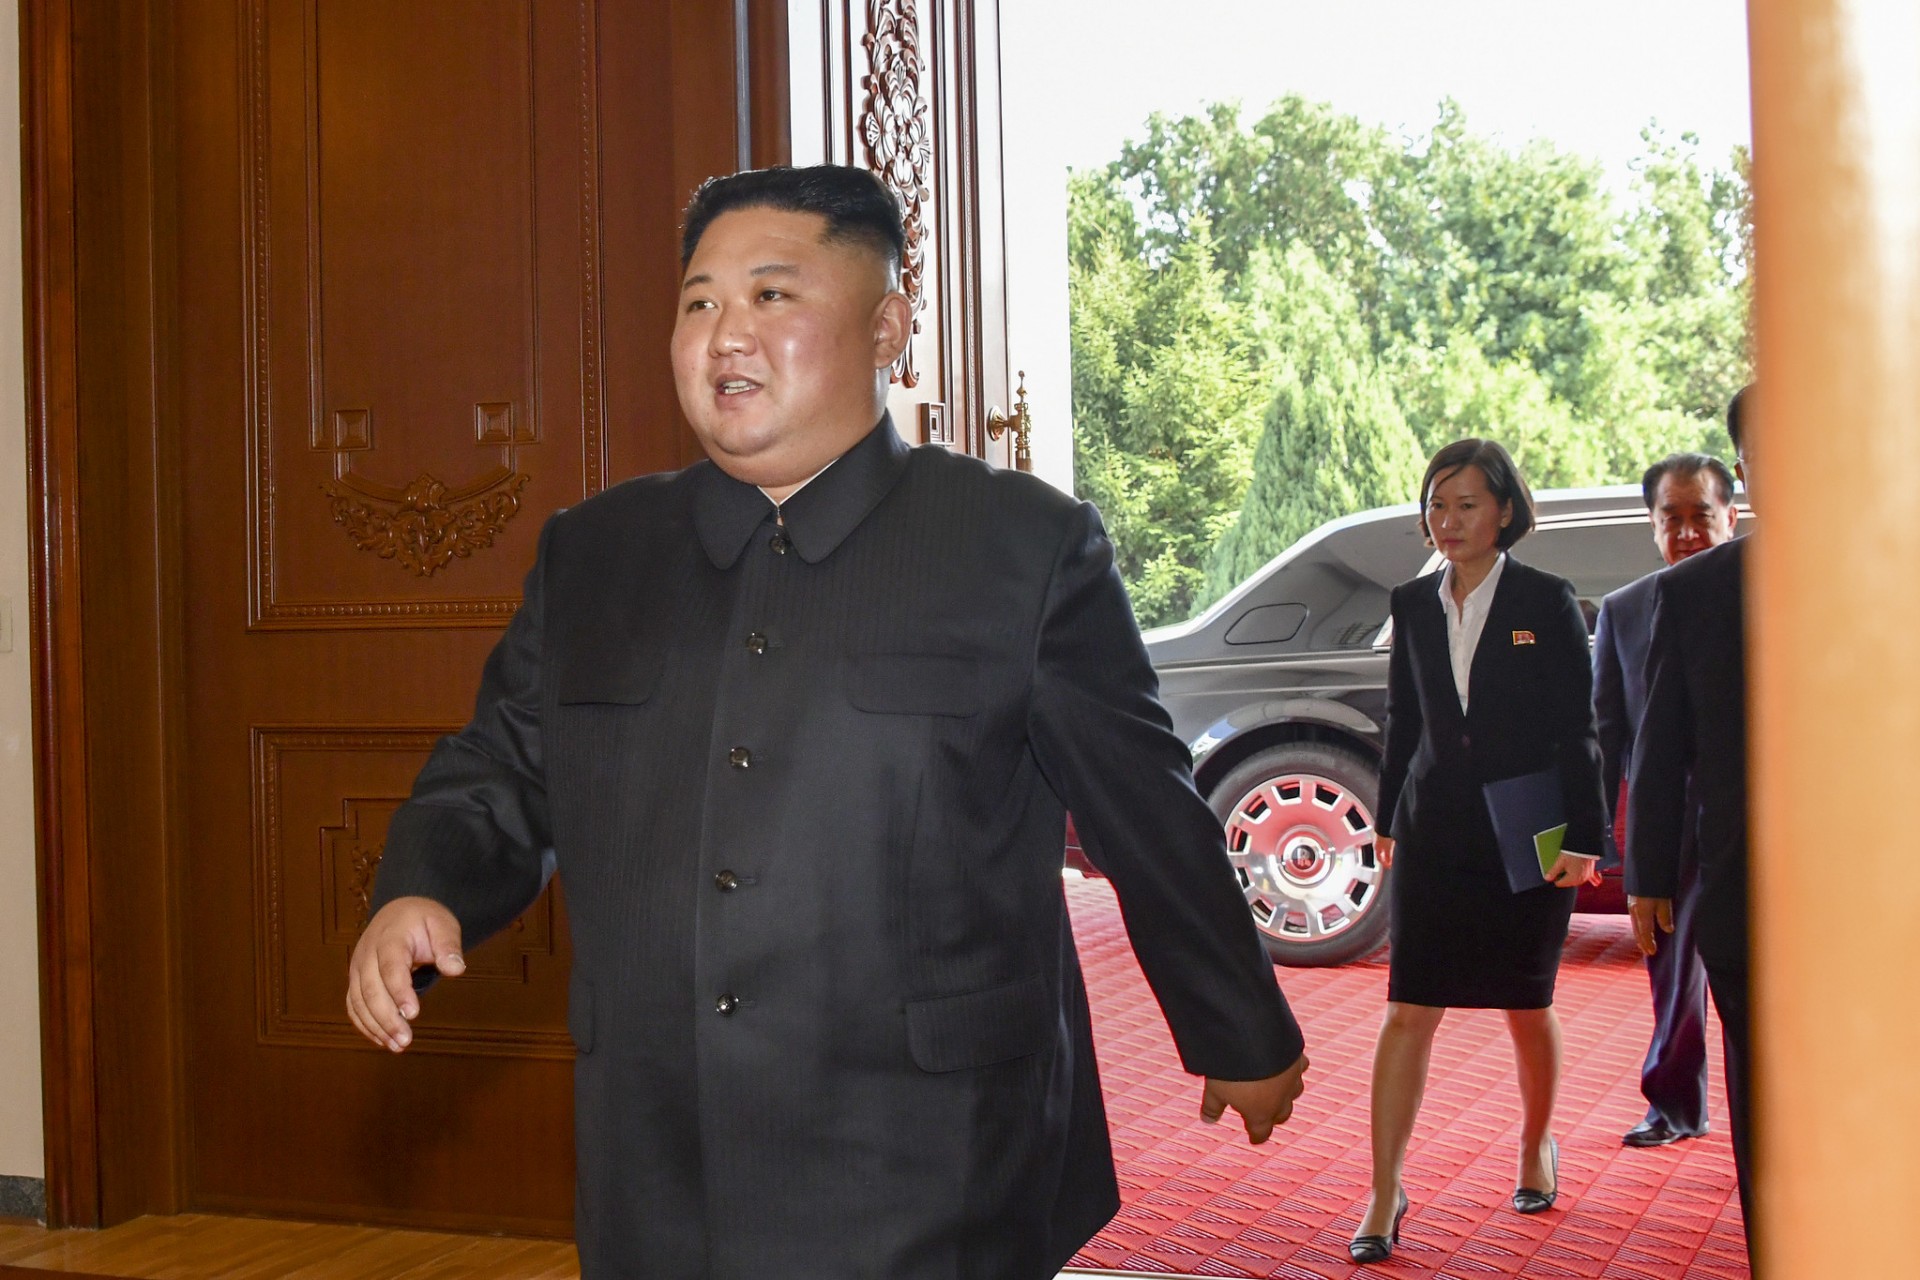 Przywódca Korei Północnej Kim Dzong Un. Fot. Ron Przysucha/US Department of State (flickr) - zdjęcie ilustracyjne.